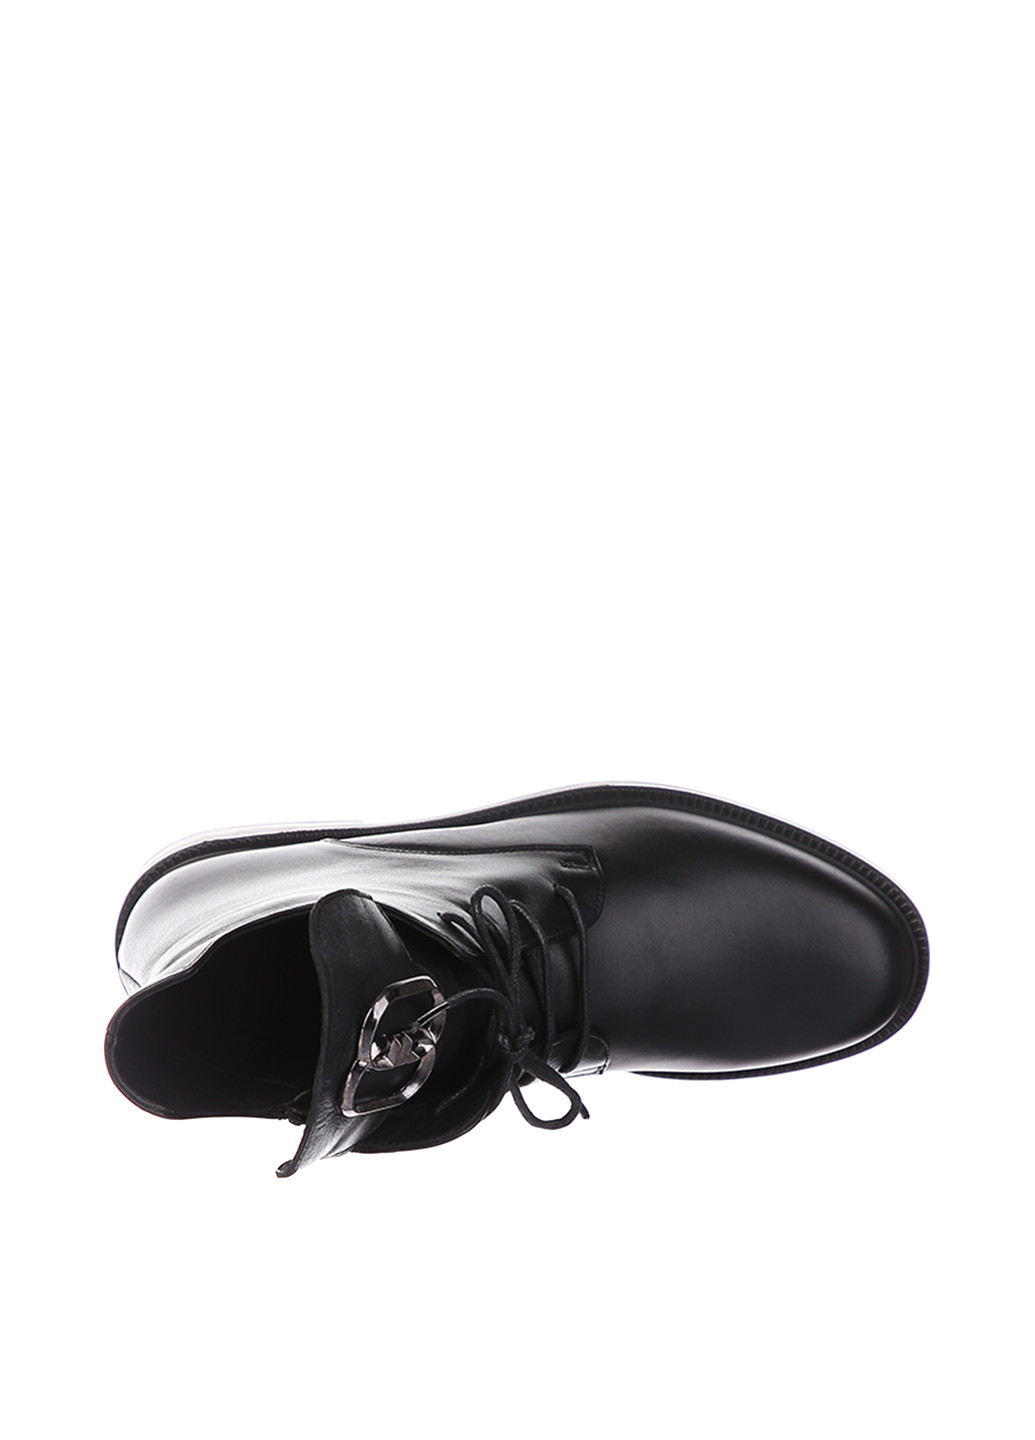 Осенние ботинки берцы Derem со шнуровкой, с металлическими вставками